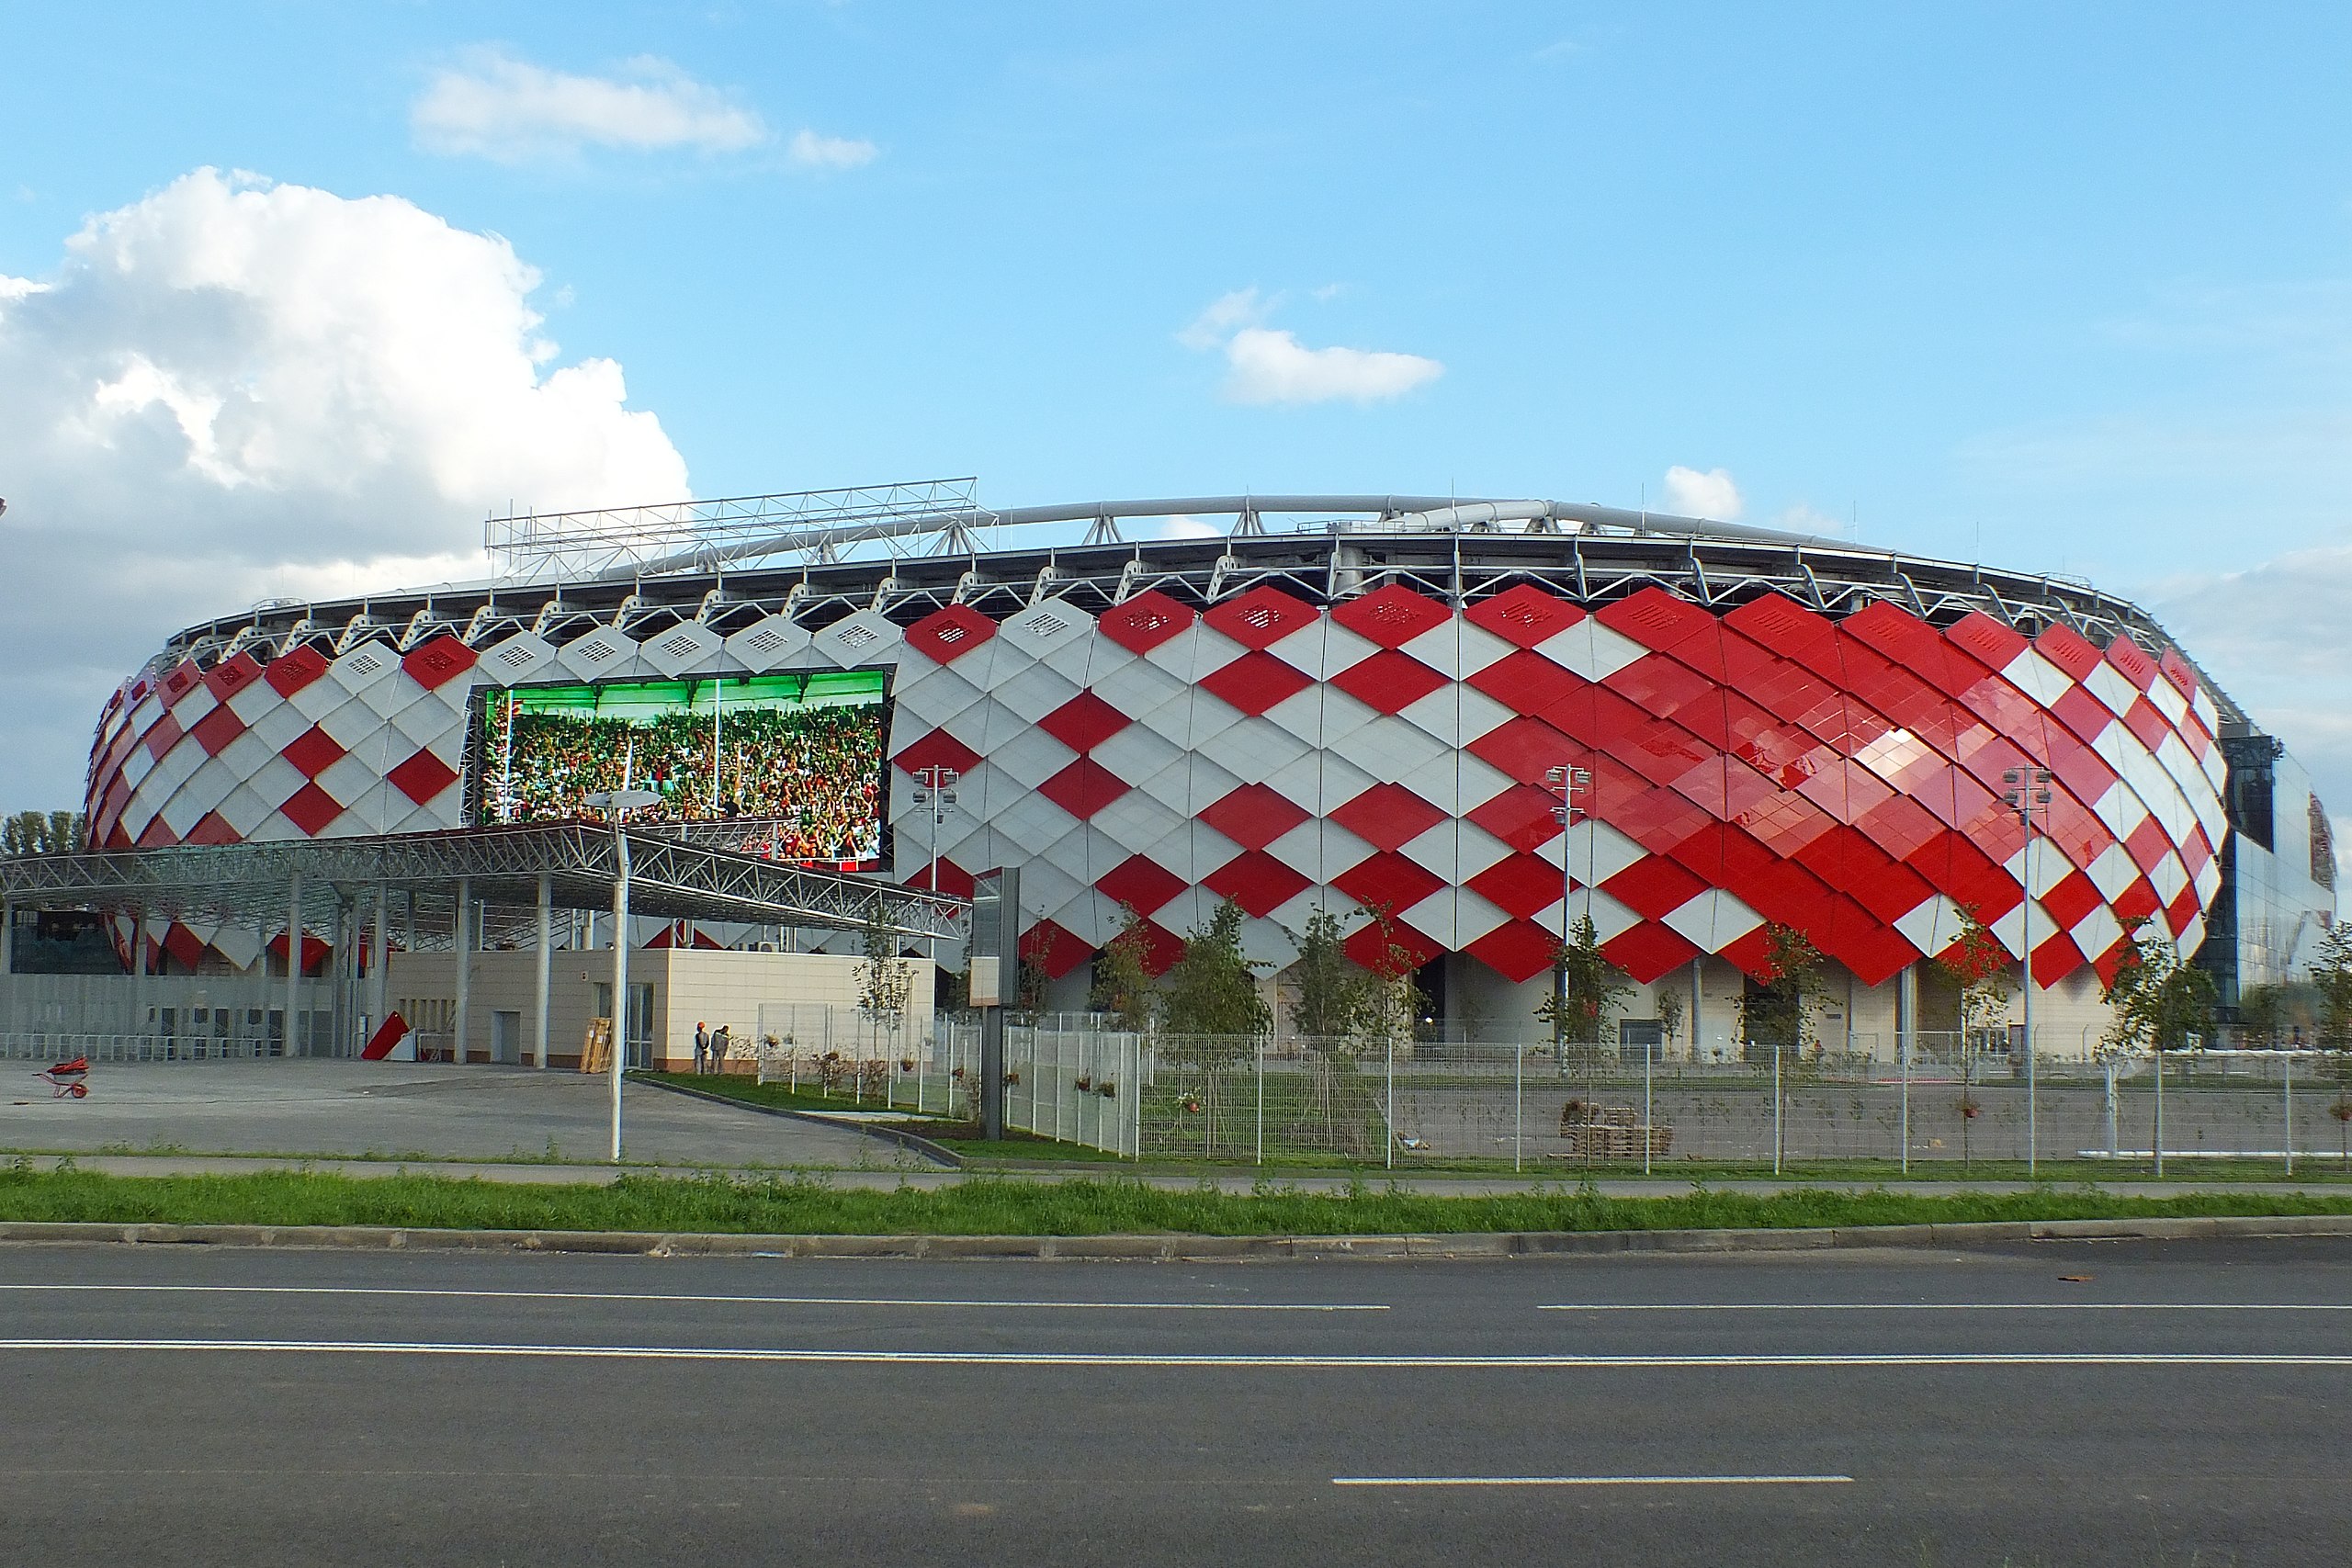 Otkritie Arena - Spartak Moscow Stadium 